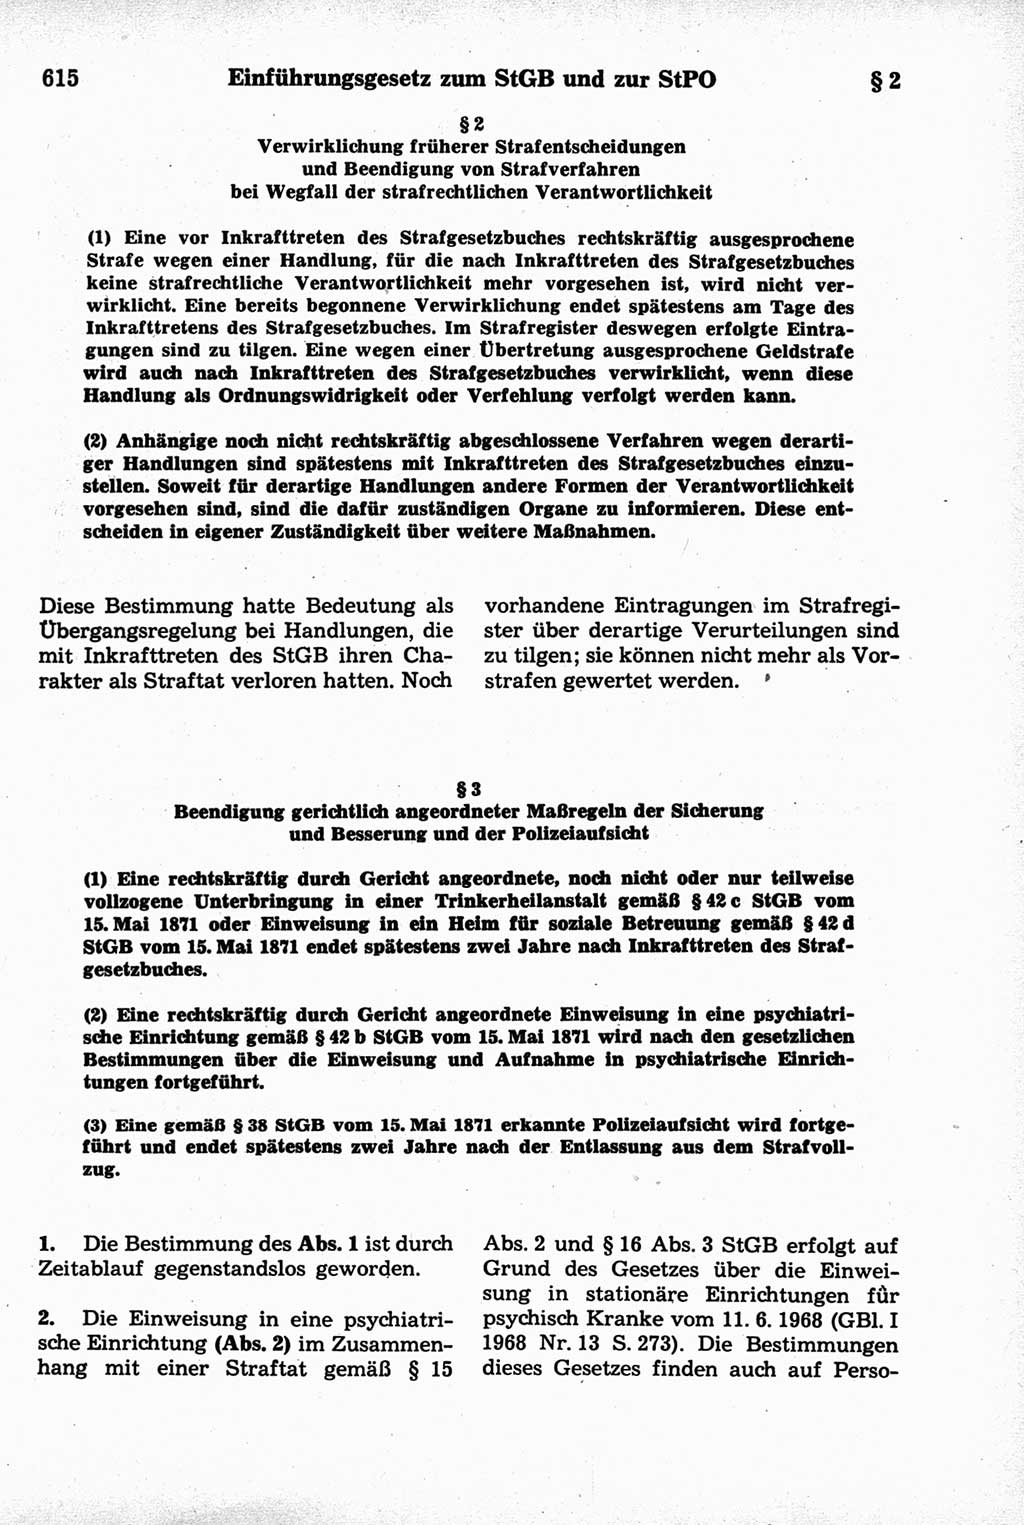 Strafrecht der Deutschen Demokratischen Republik (DDR), Kommentar zum Strafgesetzbuch (StGB) 1981, Seite 615 (Strafr. DDR Komm. StGB 1981, S. 615)